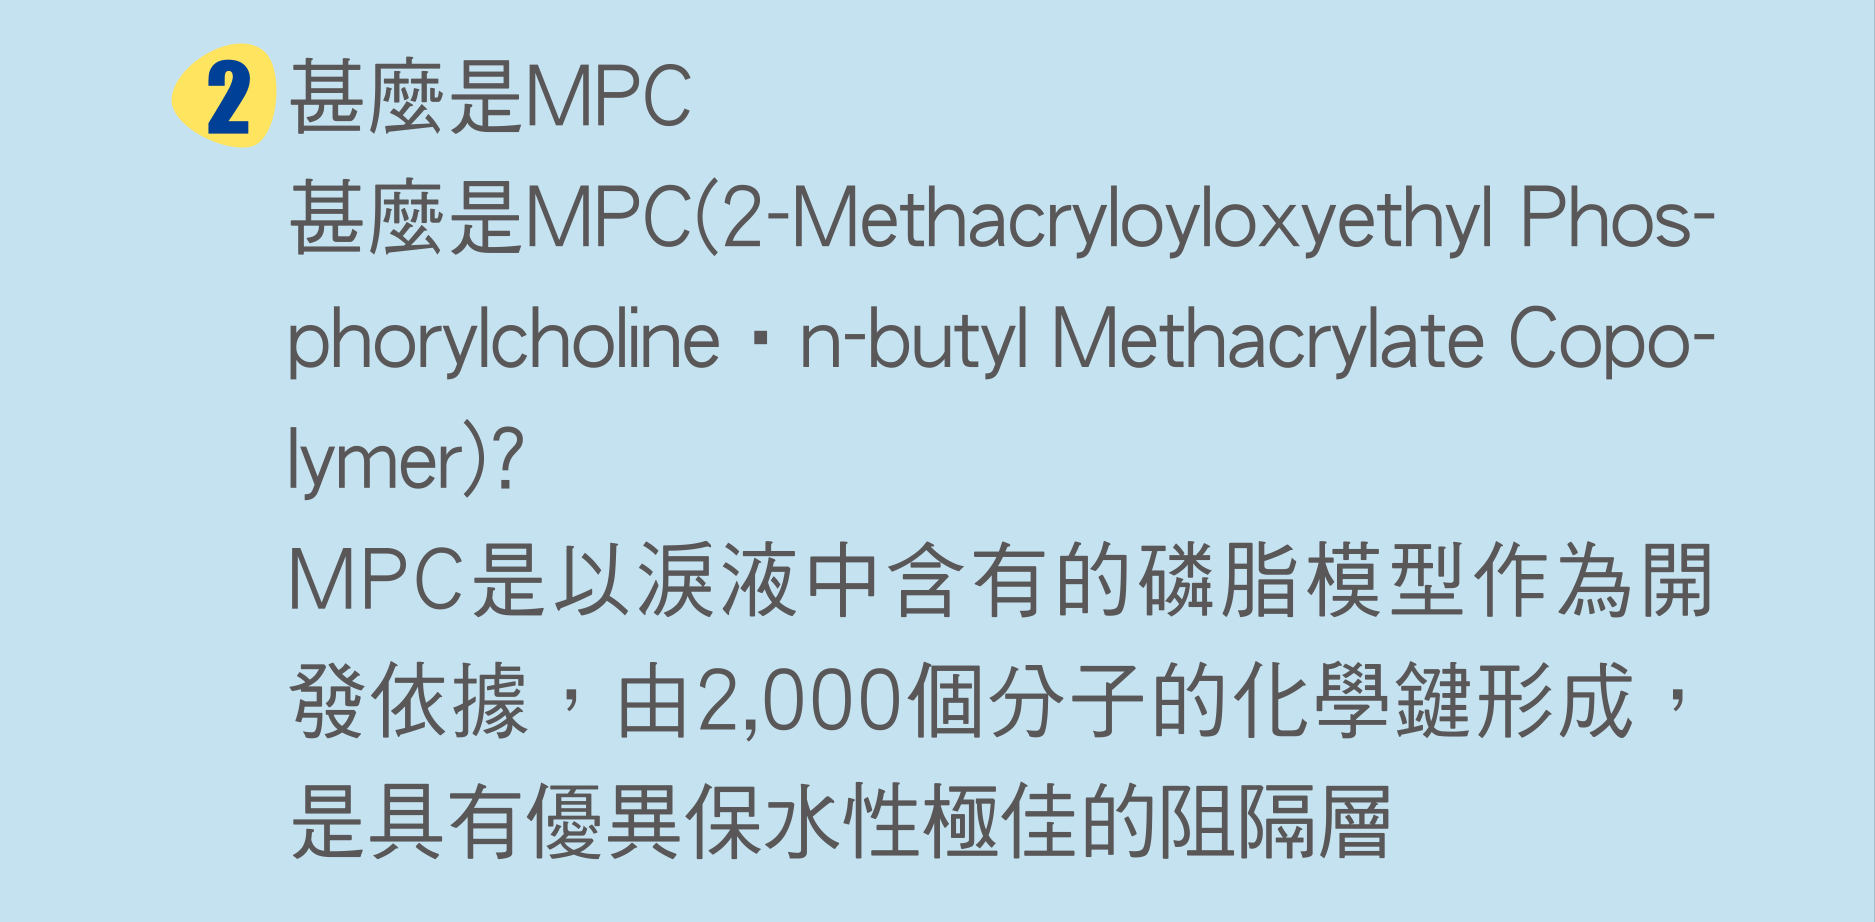 甚麼是MPC(2-Methacryloyloxyethyl Phosphorylcholine‧n-butyl Methacrylate Copolymer)?
                        MPC是以淚液中含有的磷脂模型作為開發依據，由2,000個分子的化學鍵形成，是具有優異保水性極佳的阻隔層